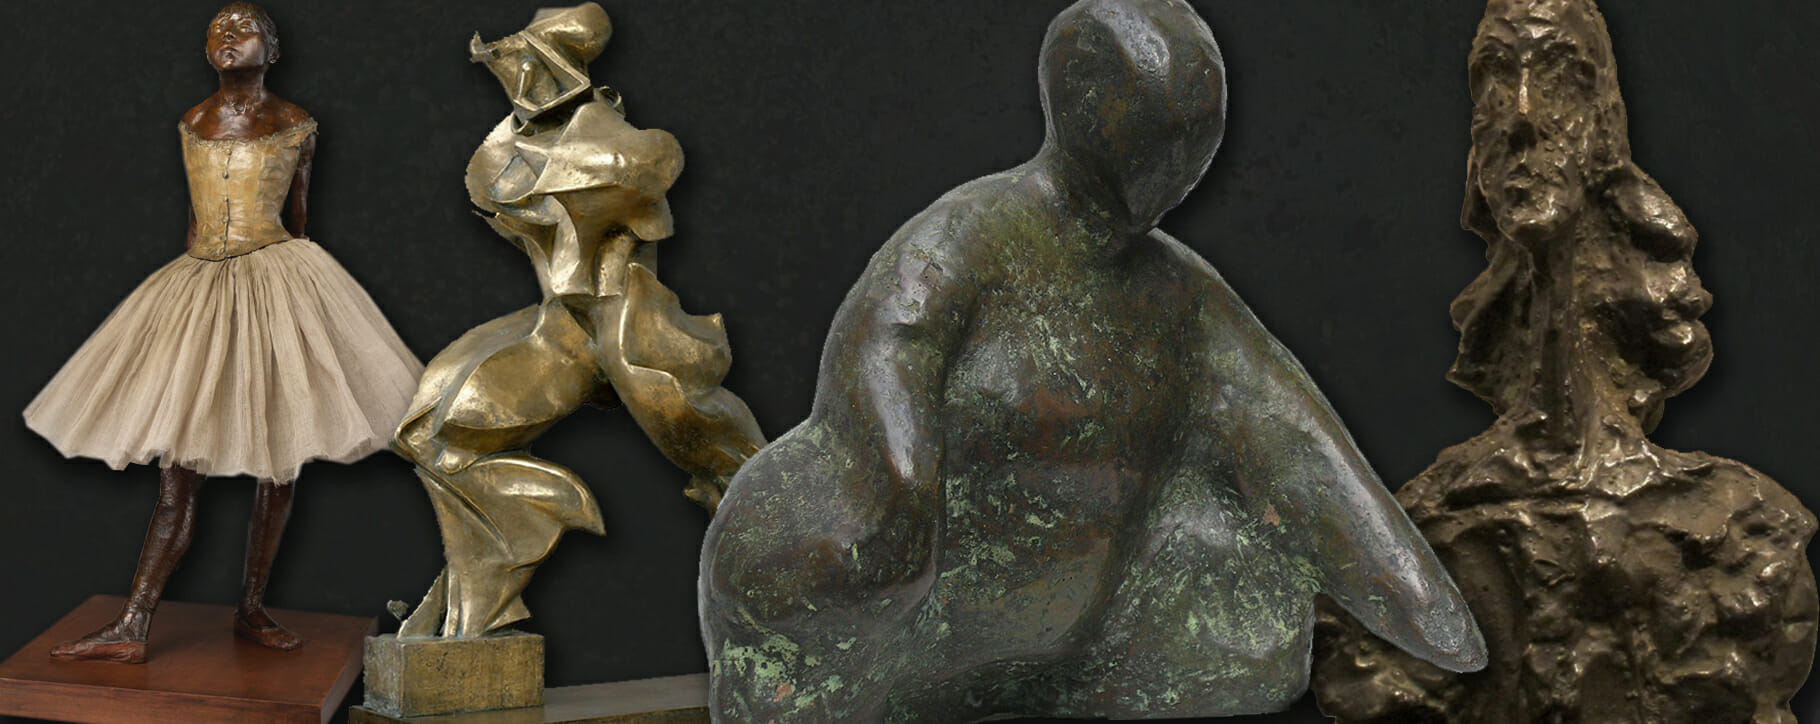 Modern contemporary bronze sculptures